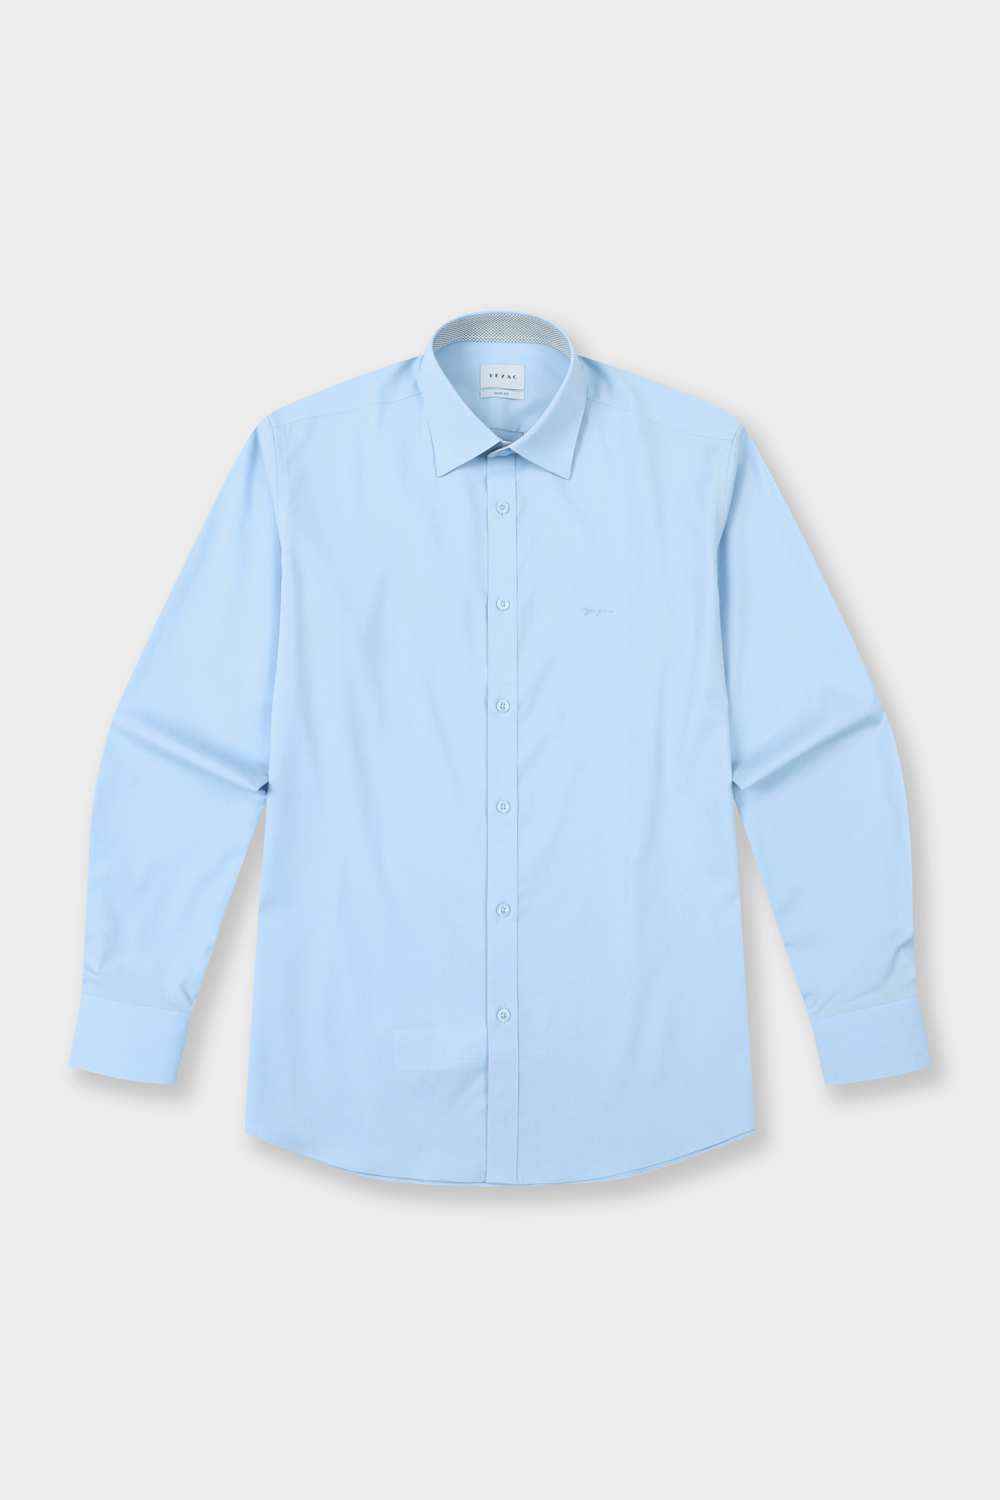 [공식스토어] 모달폴리 스트레치 레귤러핏 솔리드 셔츠 블루 YJ4SBS152BL